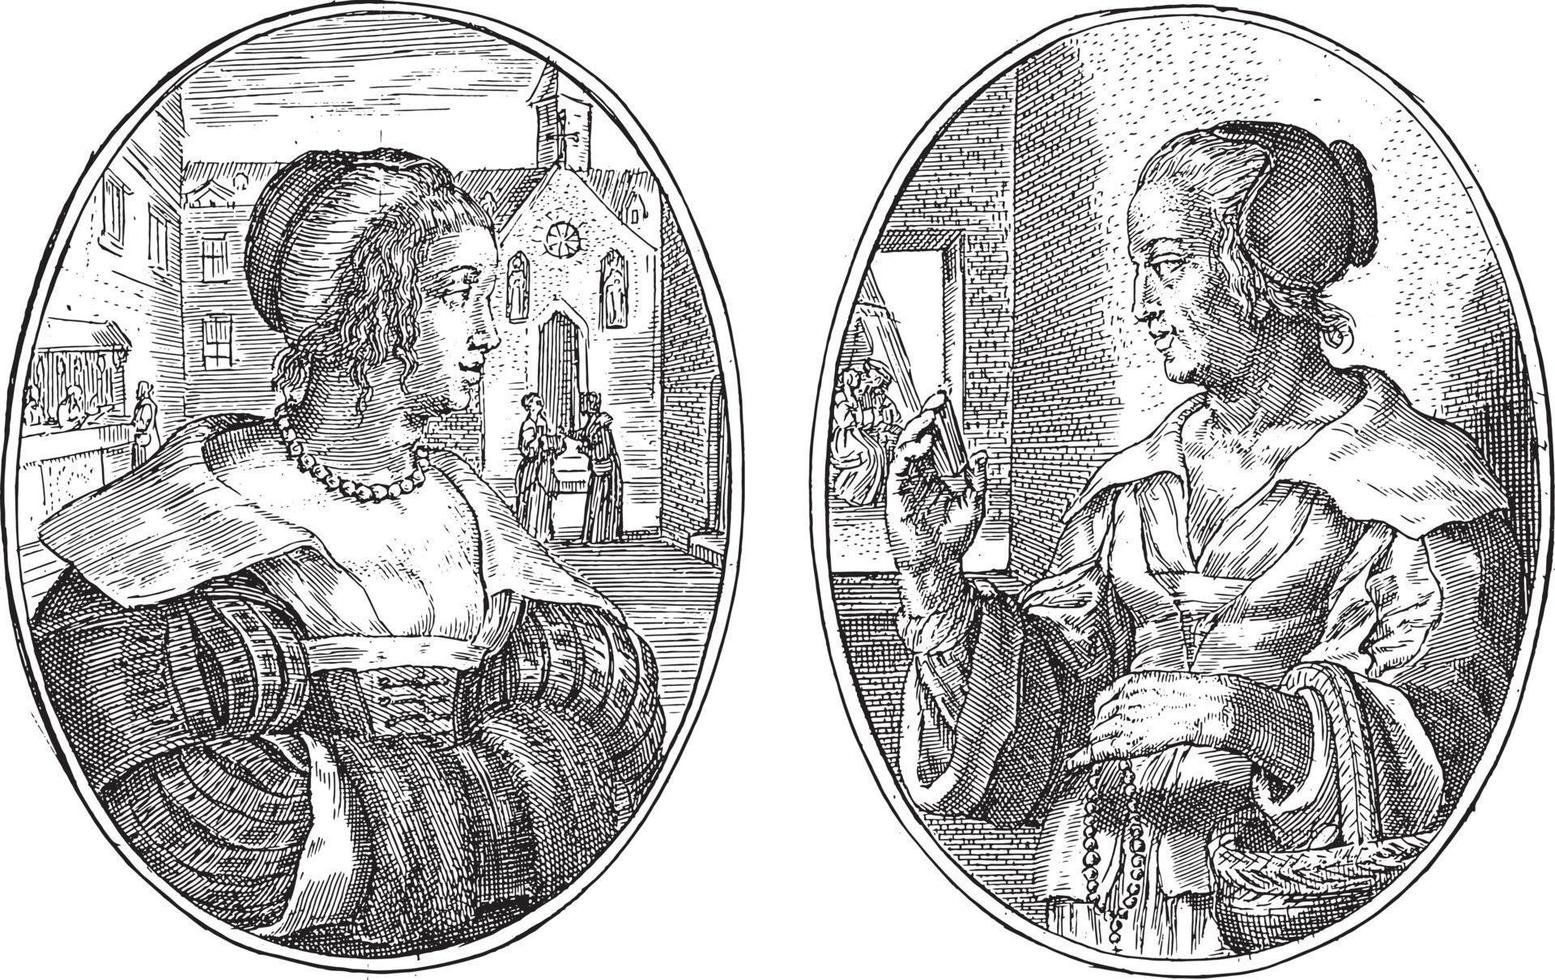 Citizen woman and matchmaker, Crispijn van de Passe II, 1641, vintage illustration. vector